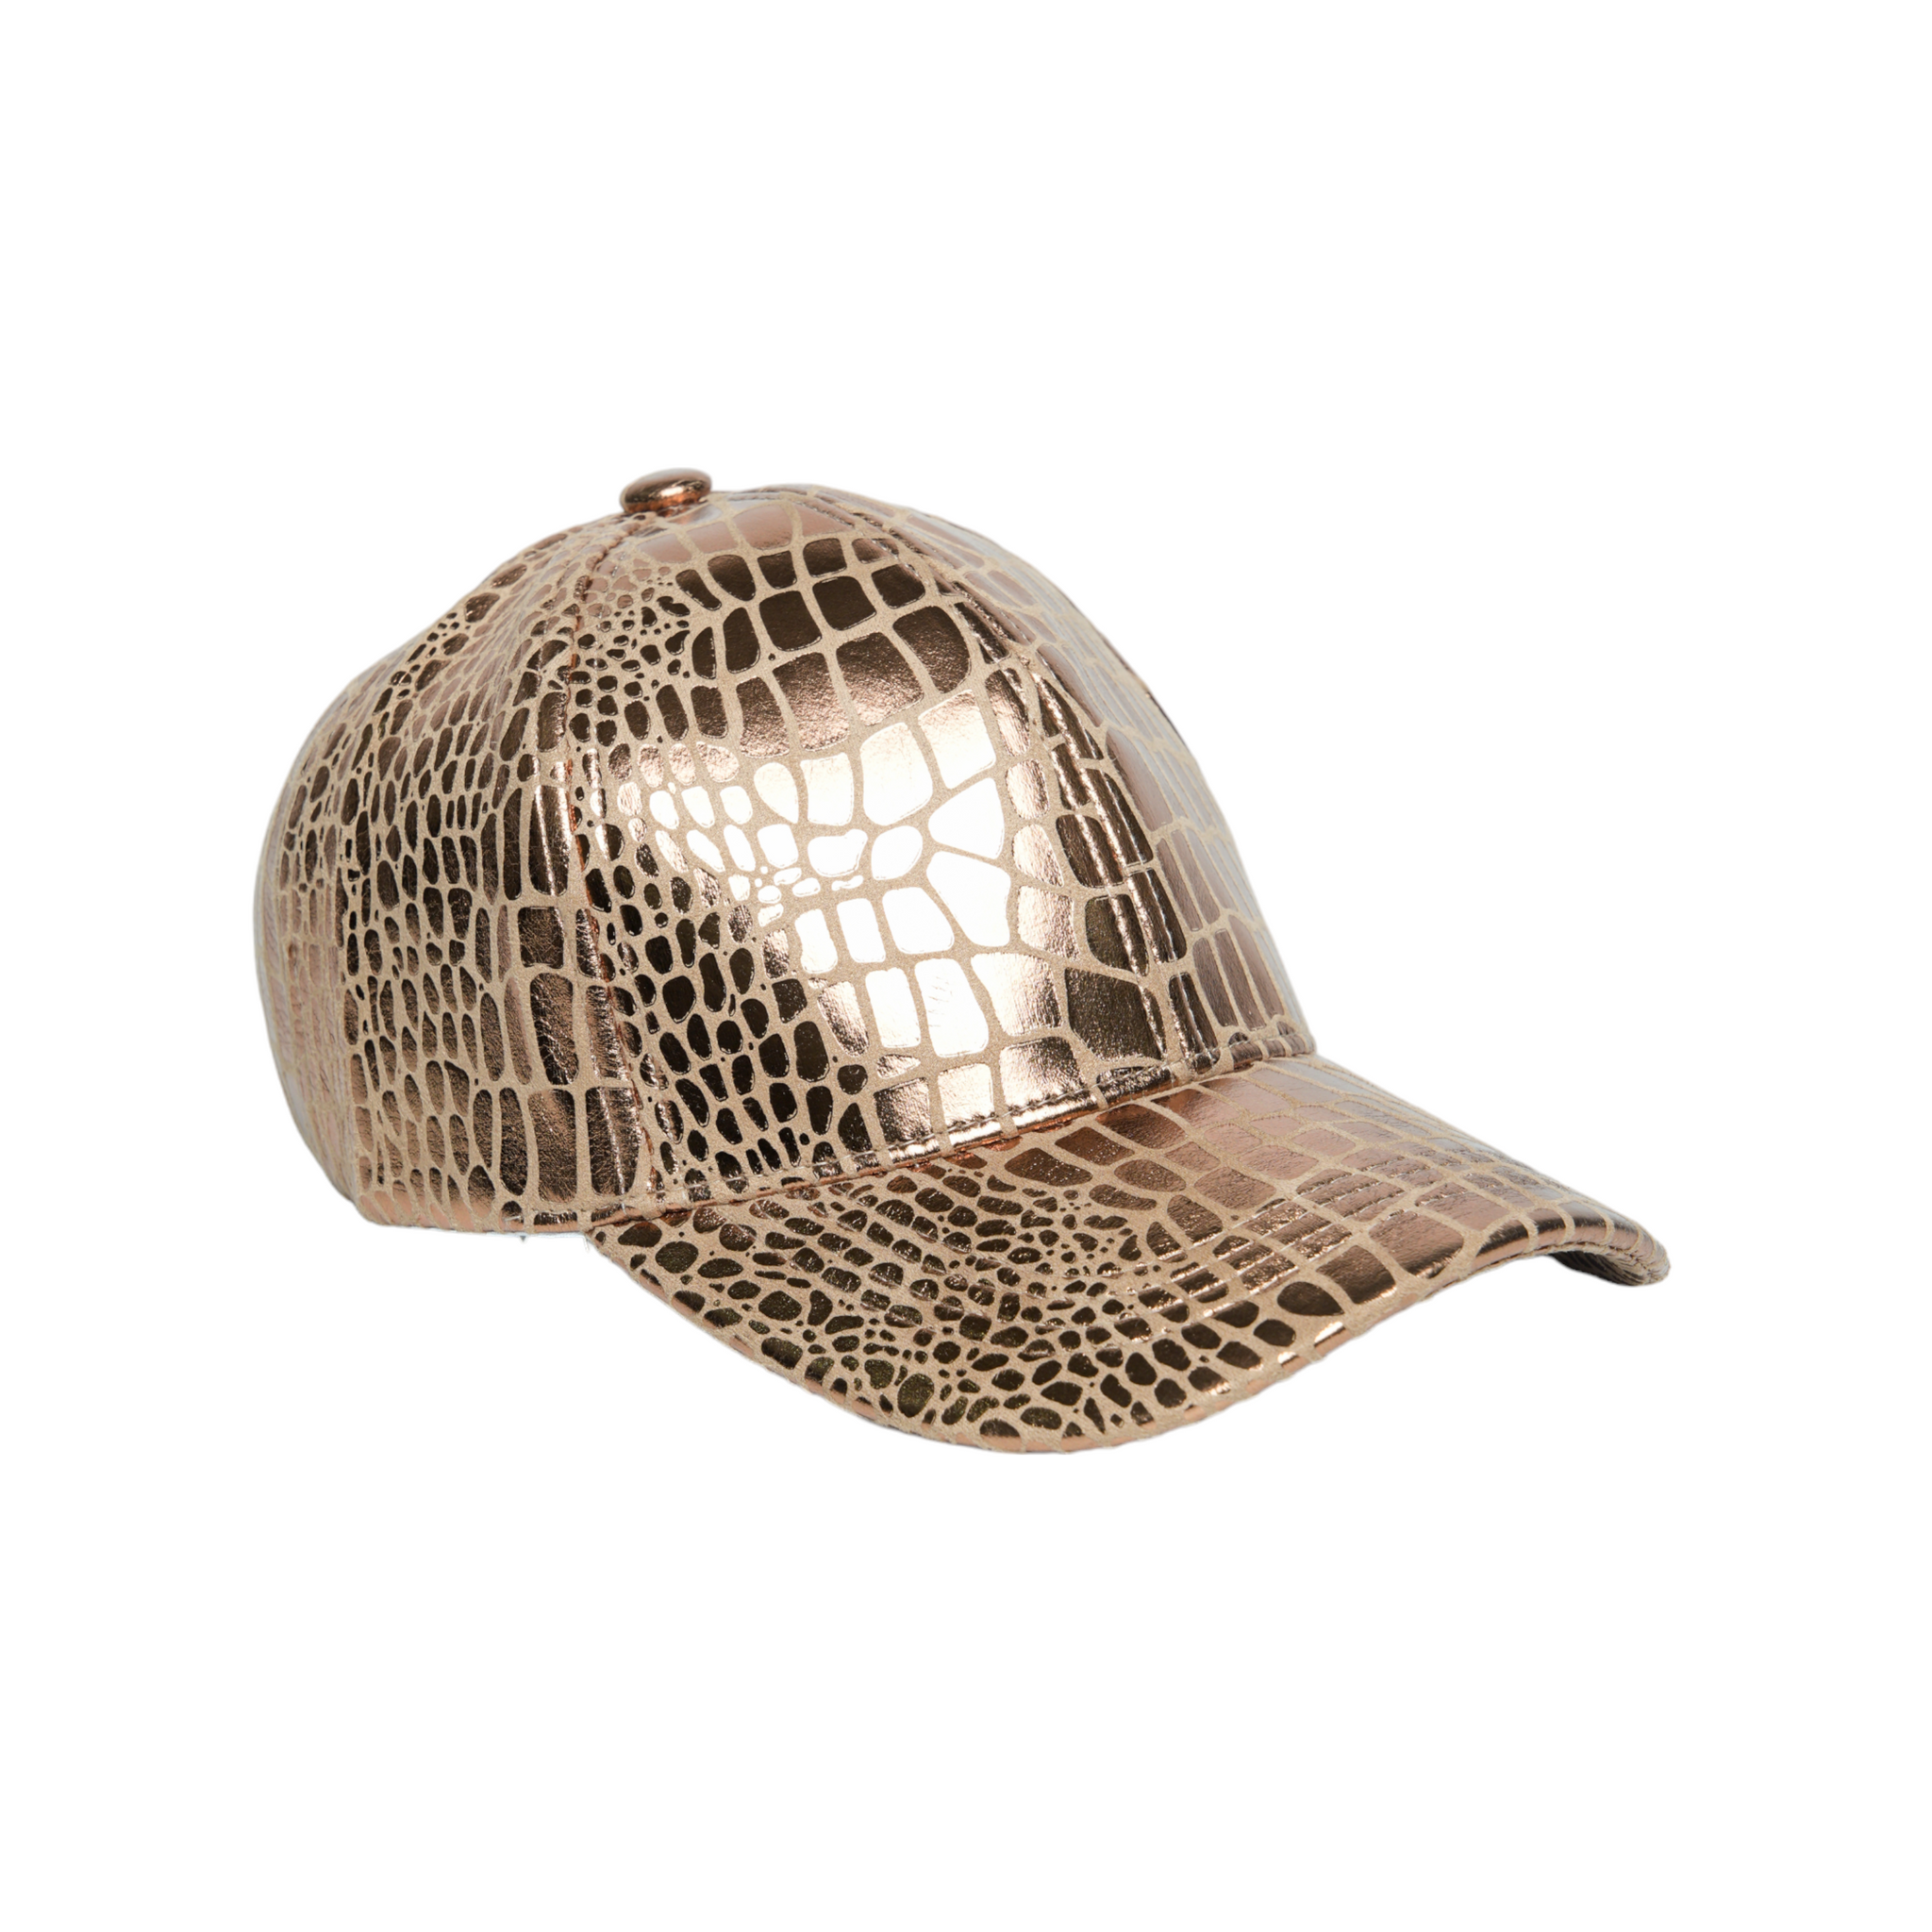 Chokore Crocodile Skin Print Leather Baseball Cap (Gold)